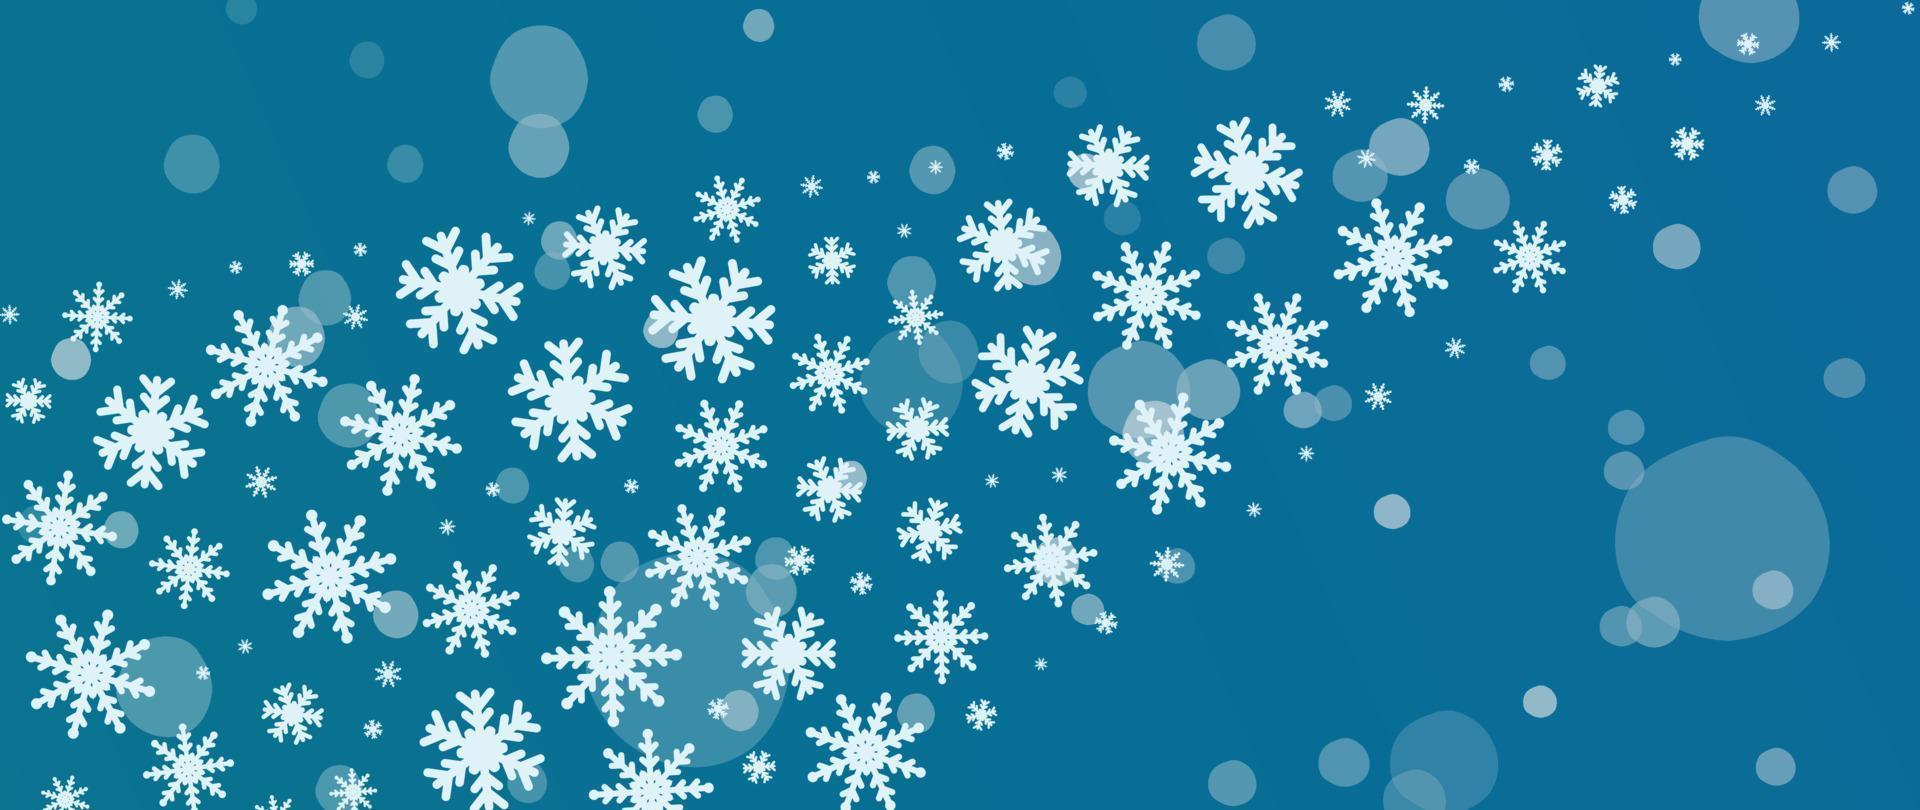 élégante illustration vectorielle de flocon de neige hiver fond. flocon de neige décoratif de luxe et chutes de neige sur fond bleu bokeh. conception adaptée à la carte d'invitation, aux voeux, au papier peint, à l'affiche, à la bannière. vecteur